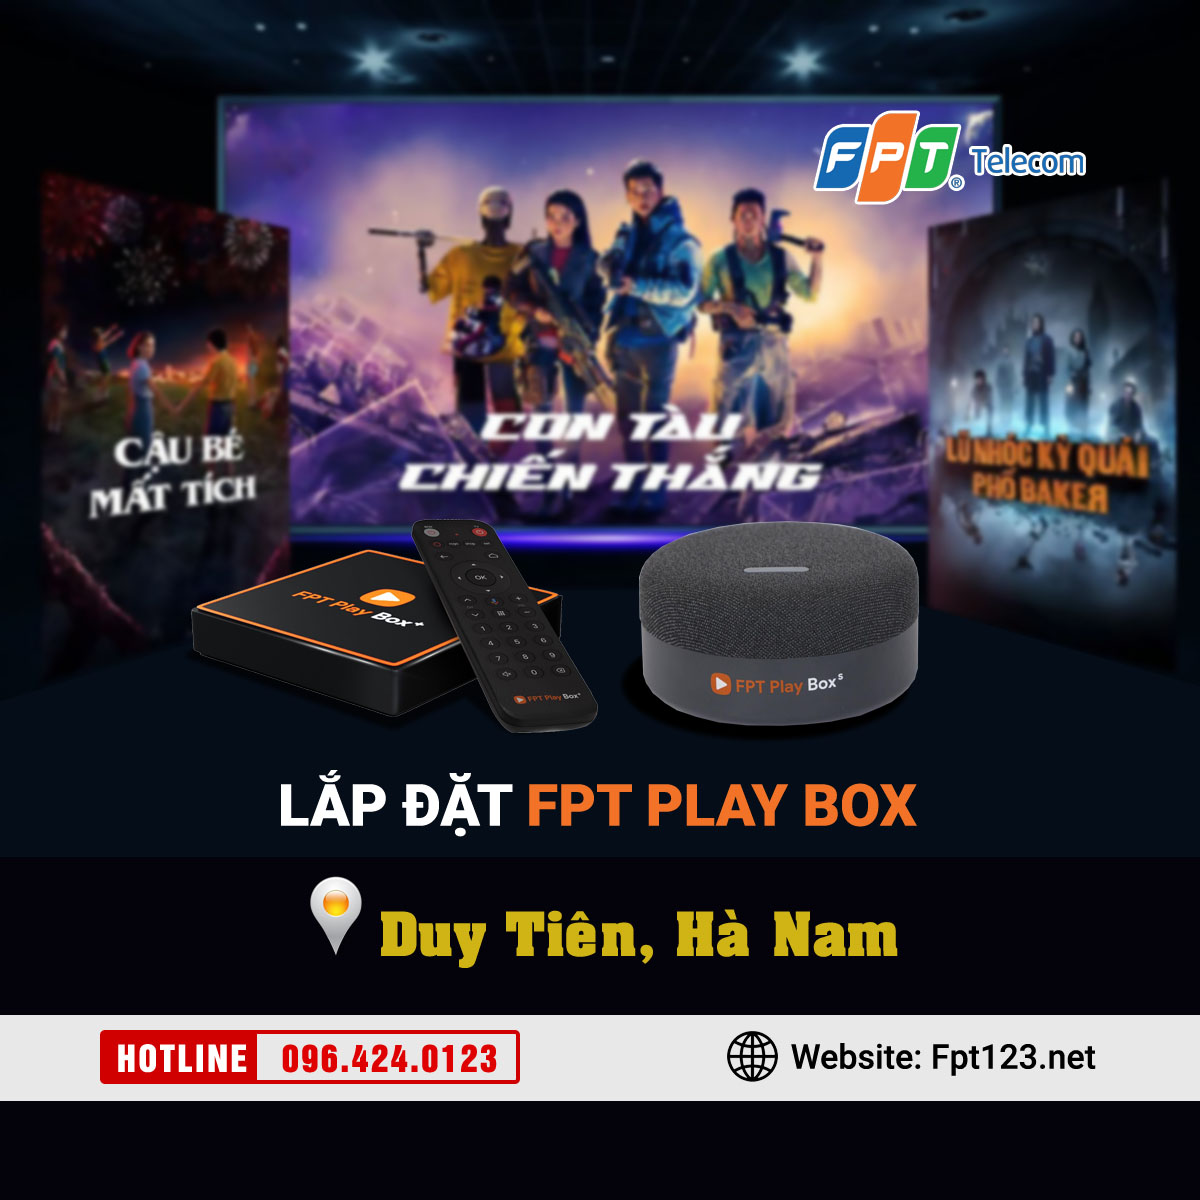 Lắp đặt FPT Play Box tại Duy Tiên, Hà Nam